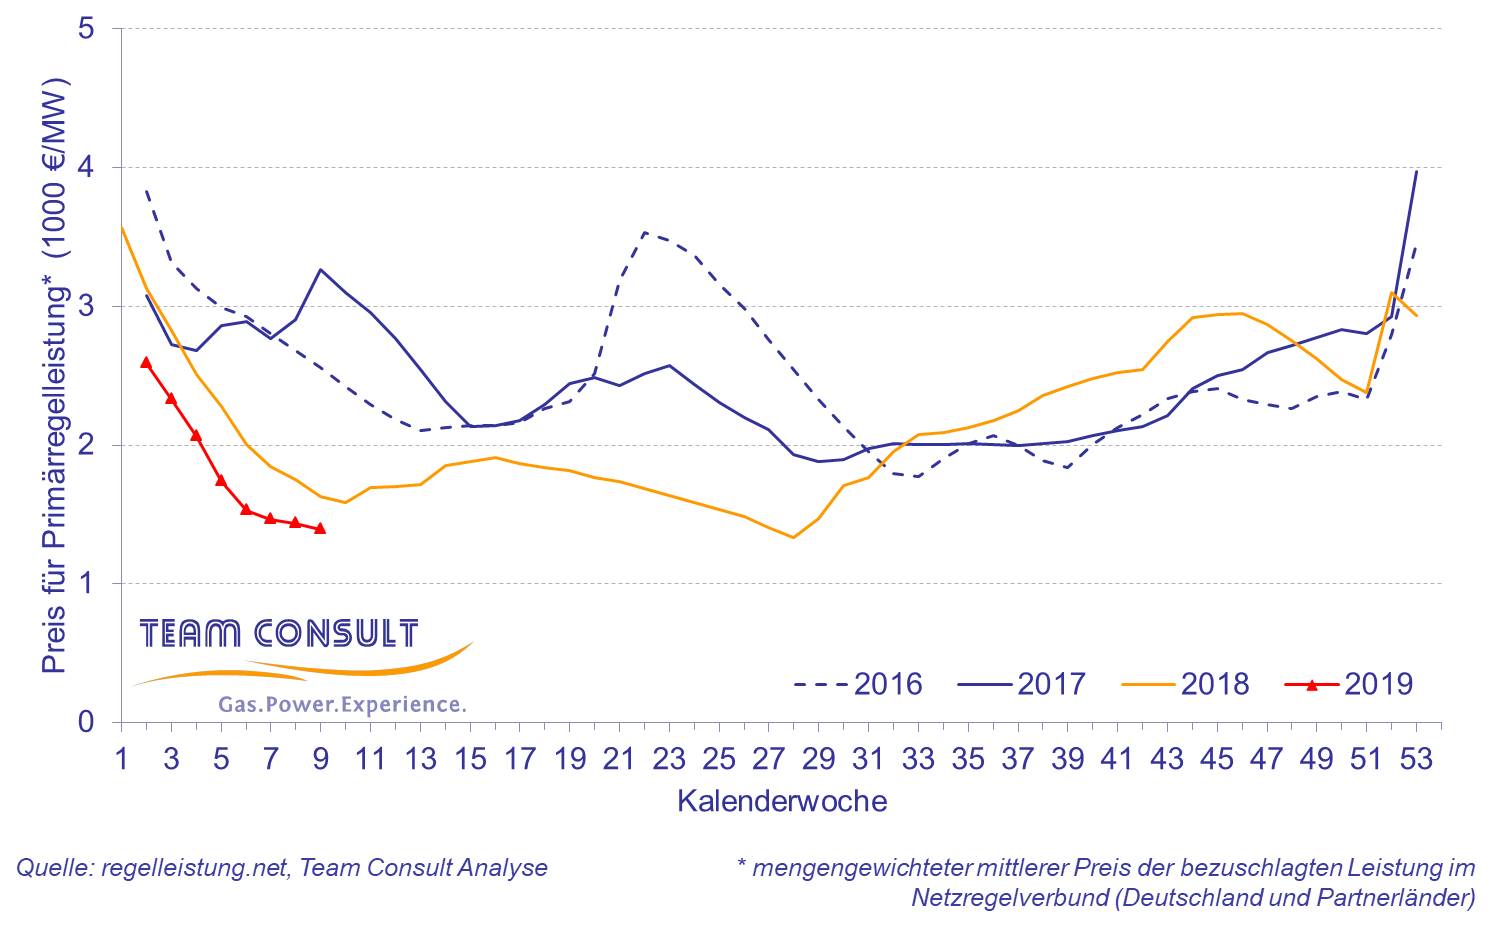 Mengengewichteter mittlerer Preis der bezuschlagten elektrischen Primärregelleistung im Netzregelverbund (Deutschland und Partnerländer) in den letzten vier Jahren